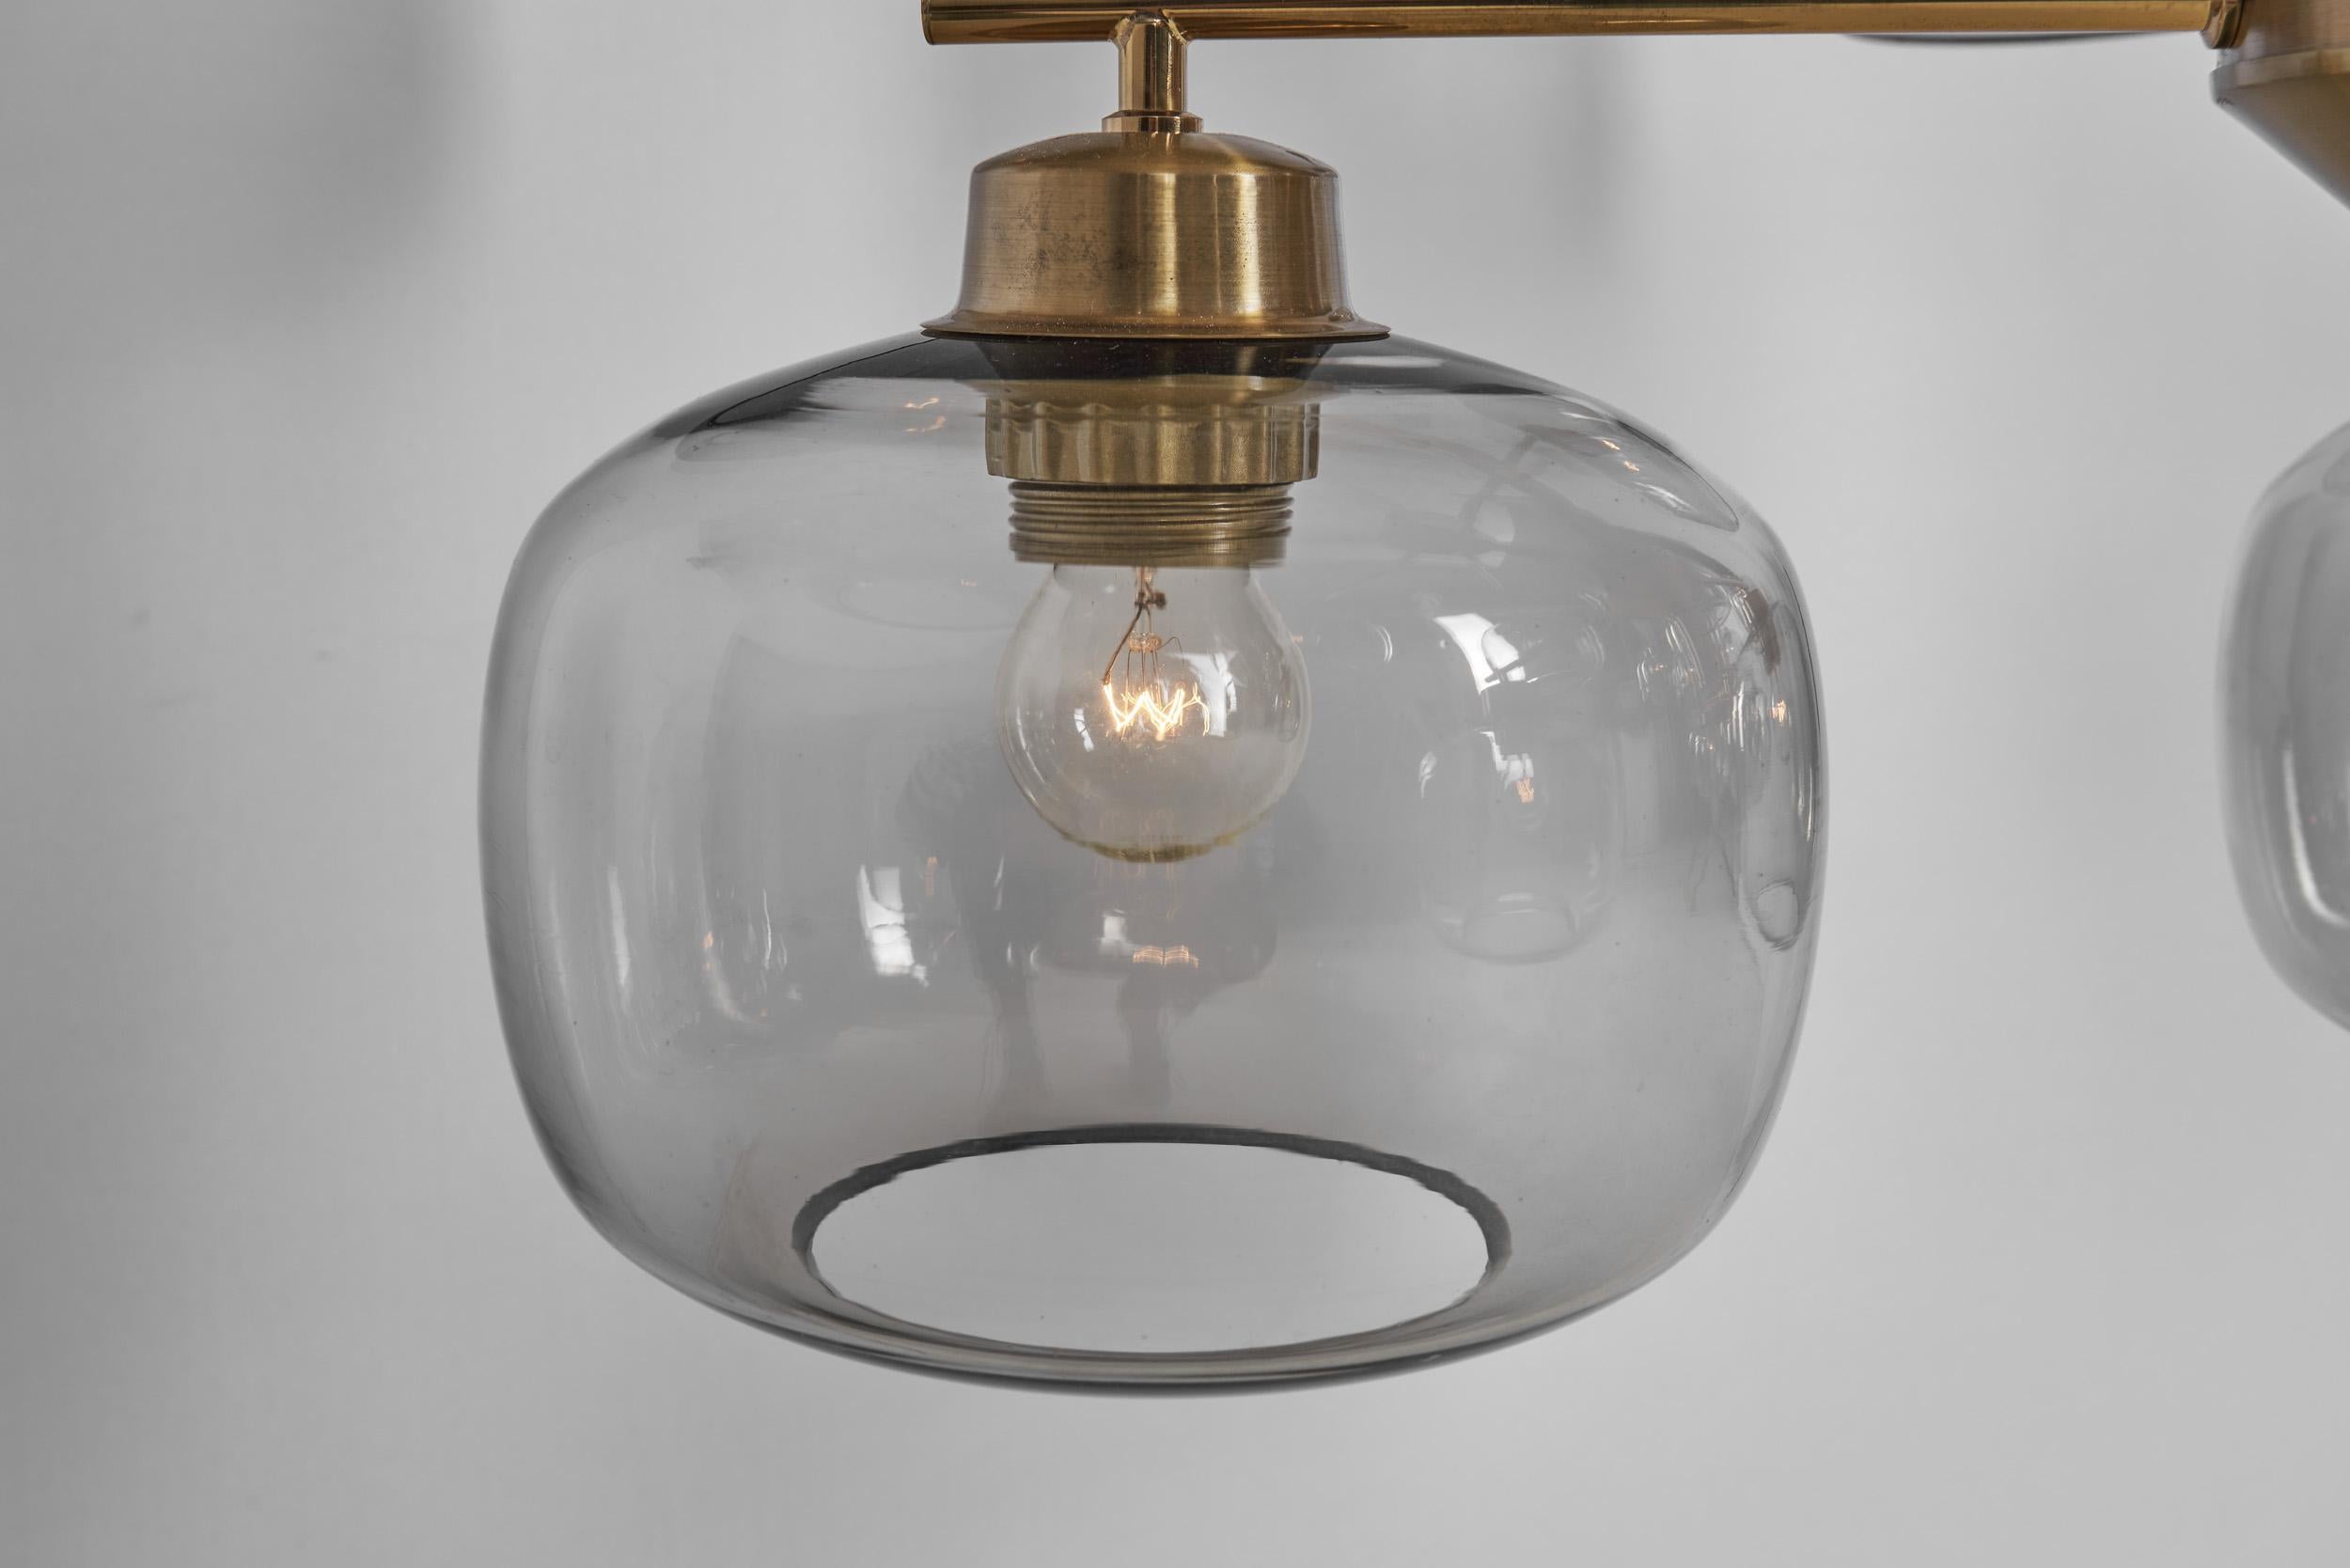 Holger Johansson Ceiling Lamps for Westal, Bankeryd, Sweden, 1960s For Sale 10